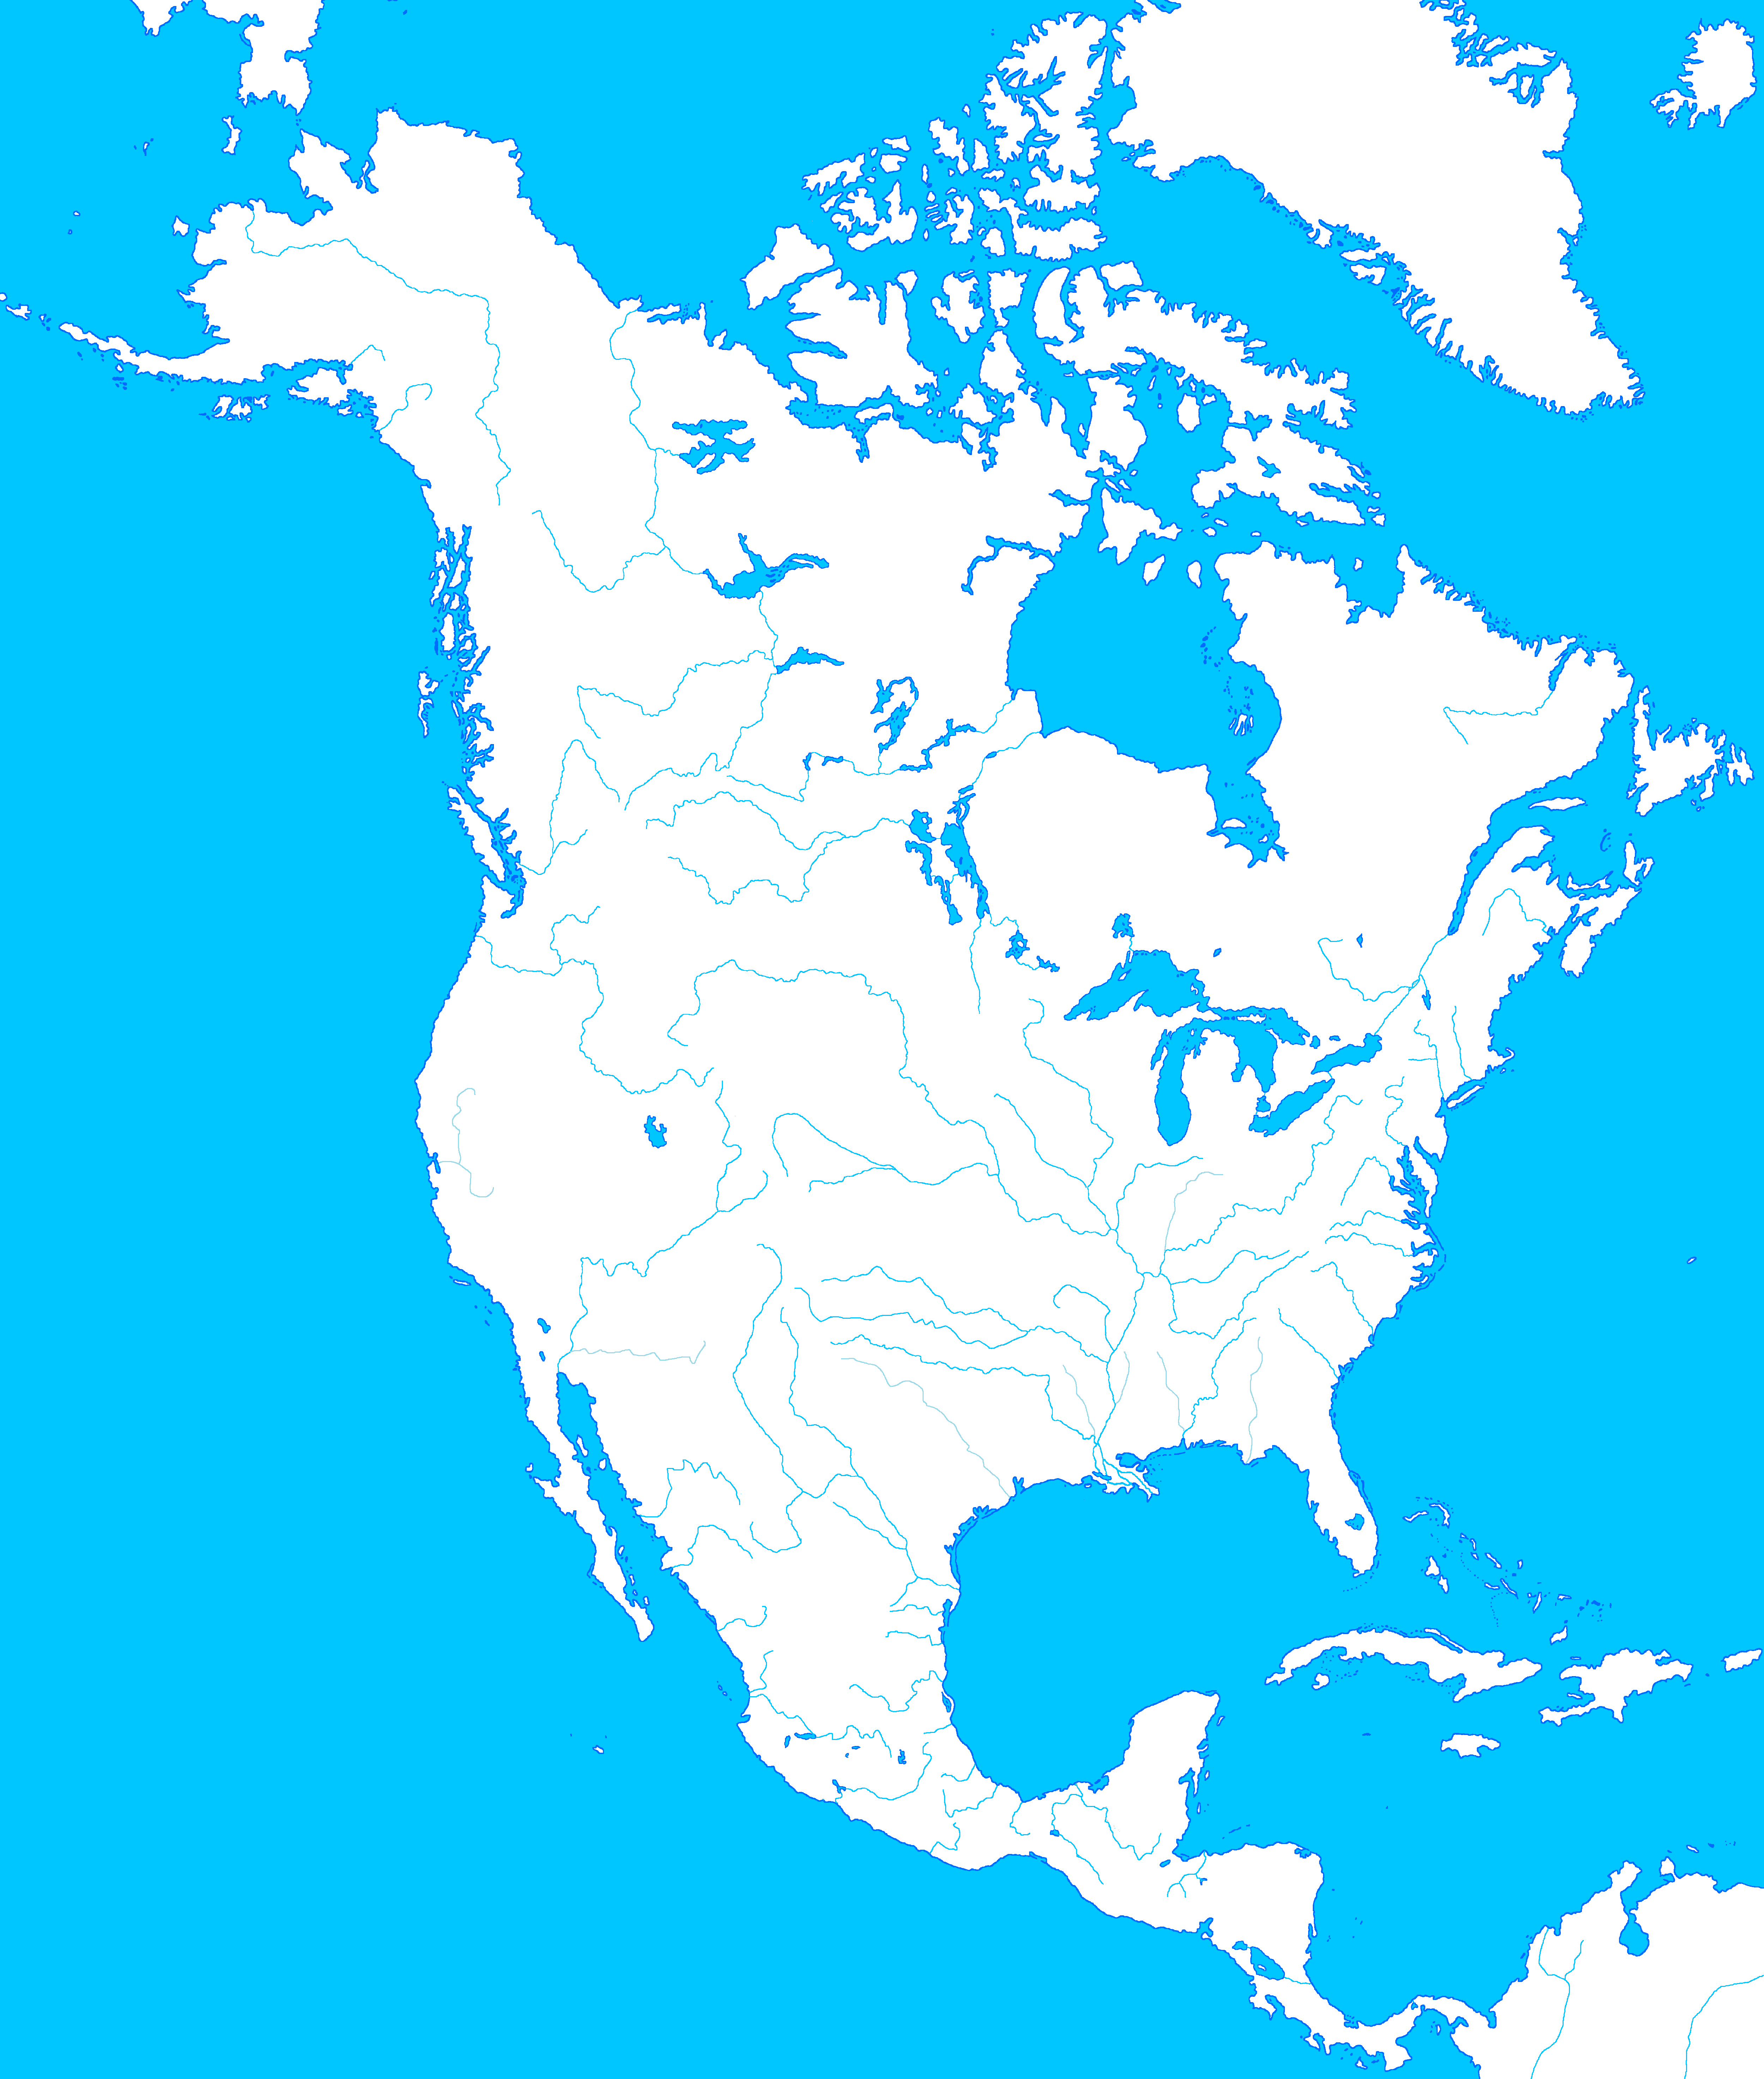 Контур материка Северная Америка. Северная Америка материк контурная карта. Карта Северной Америки без названий. Физическая карта материка Северная Америка.